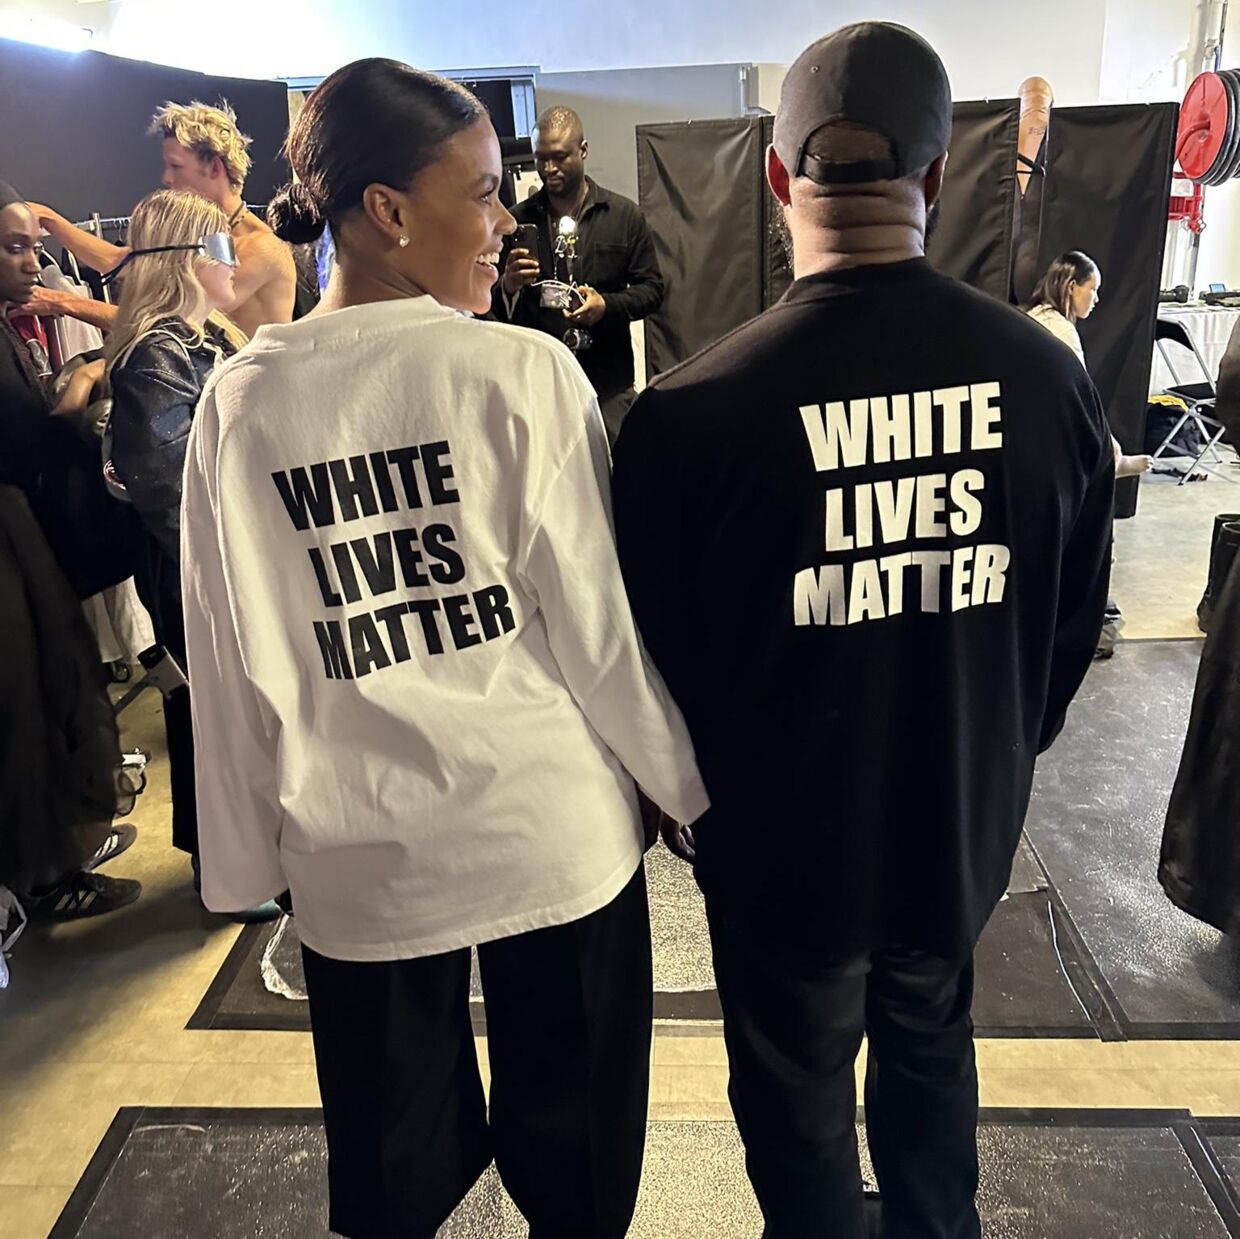 Den politiske kommentator Candace Owens delte selv på Twitter et billede af hendes og Kanye Wests trøjer med det kontroversielle budskab.